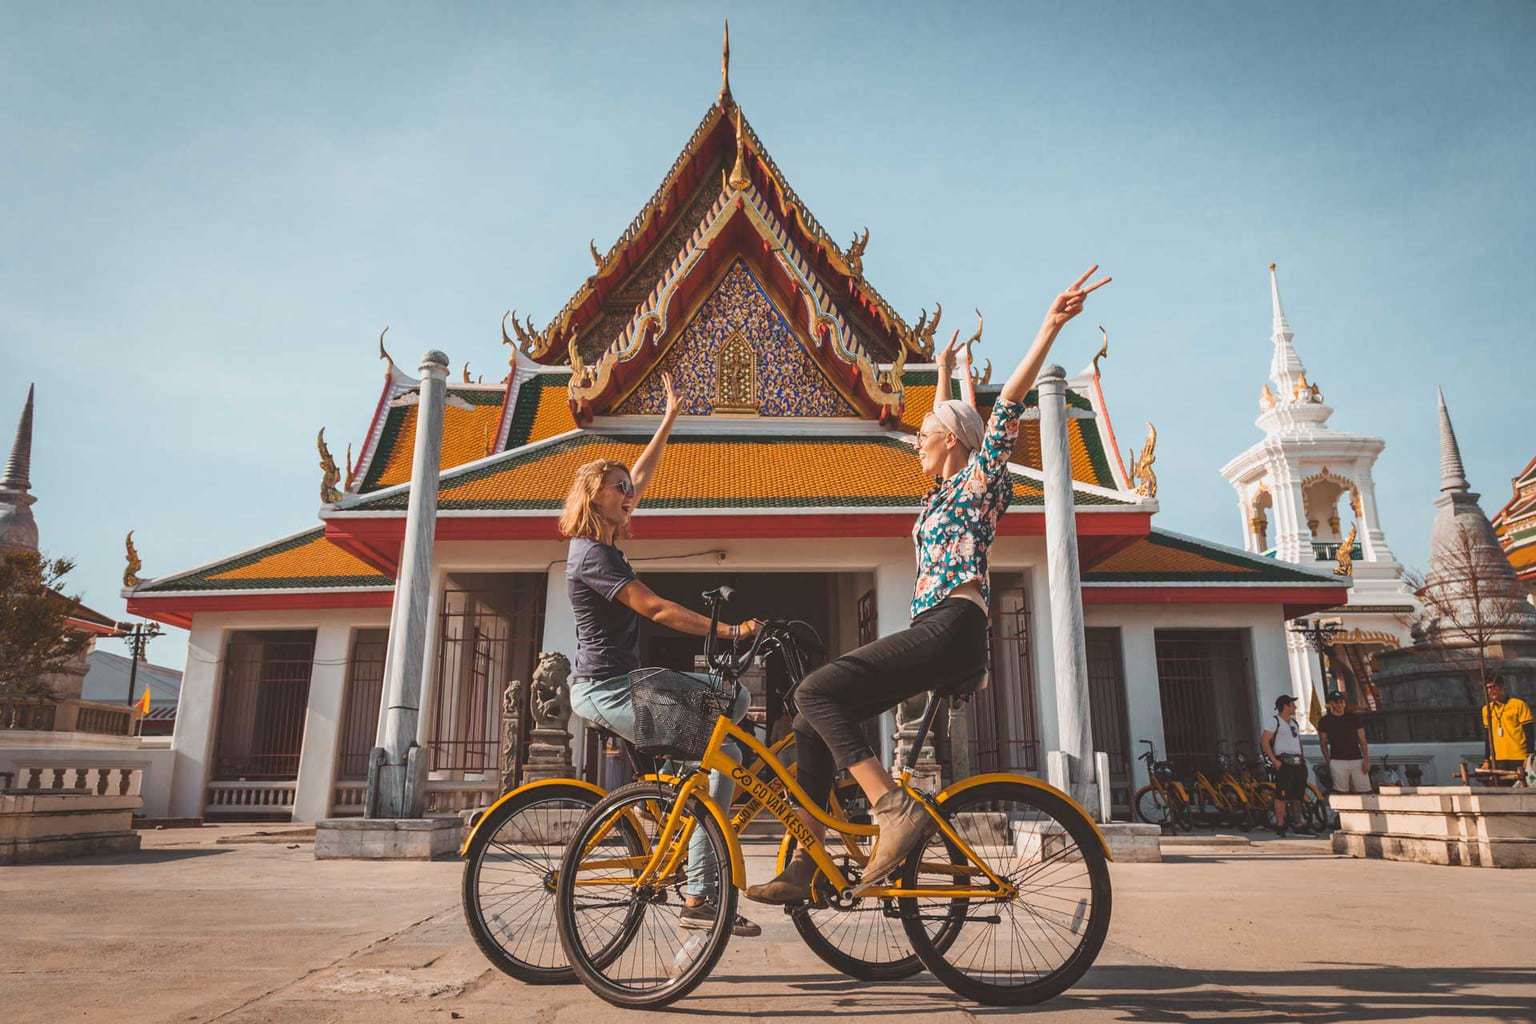 Co van Kessel Bangkok Bicycle Tour, Thailand